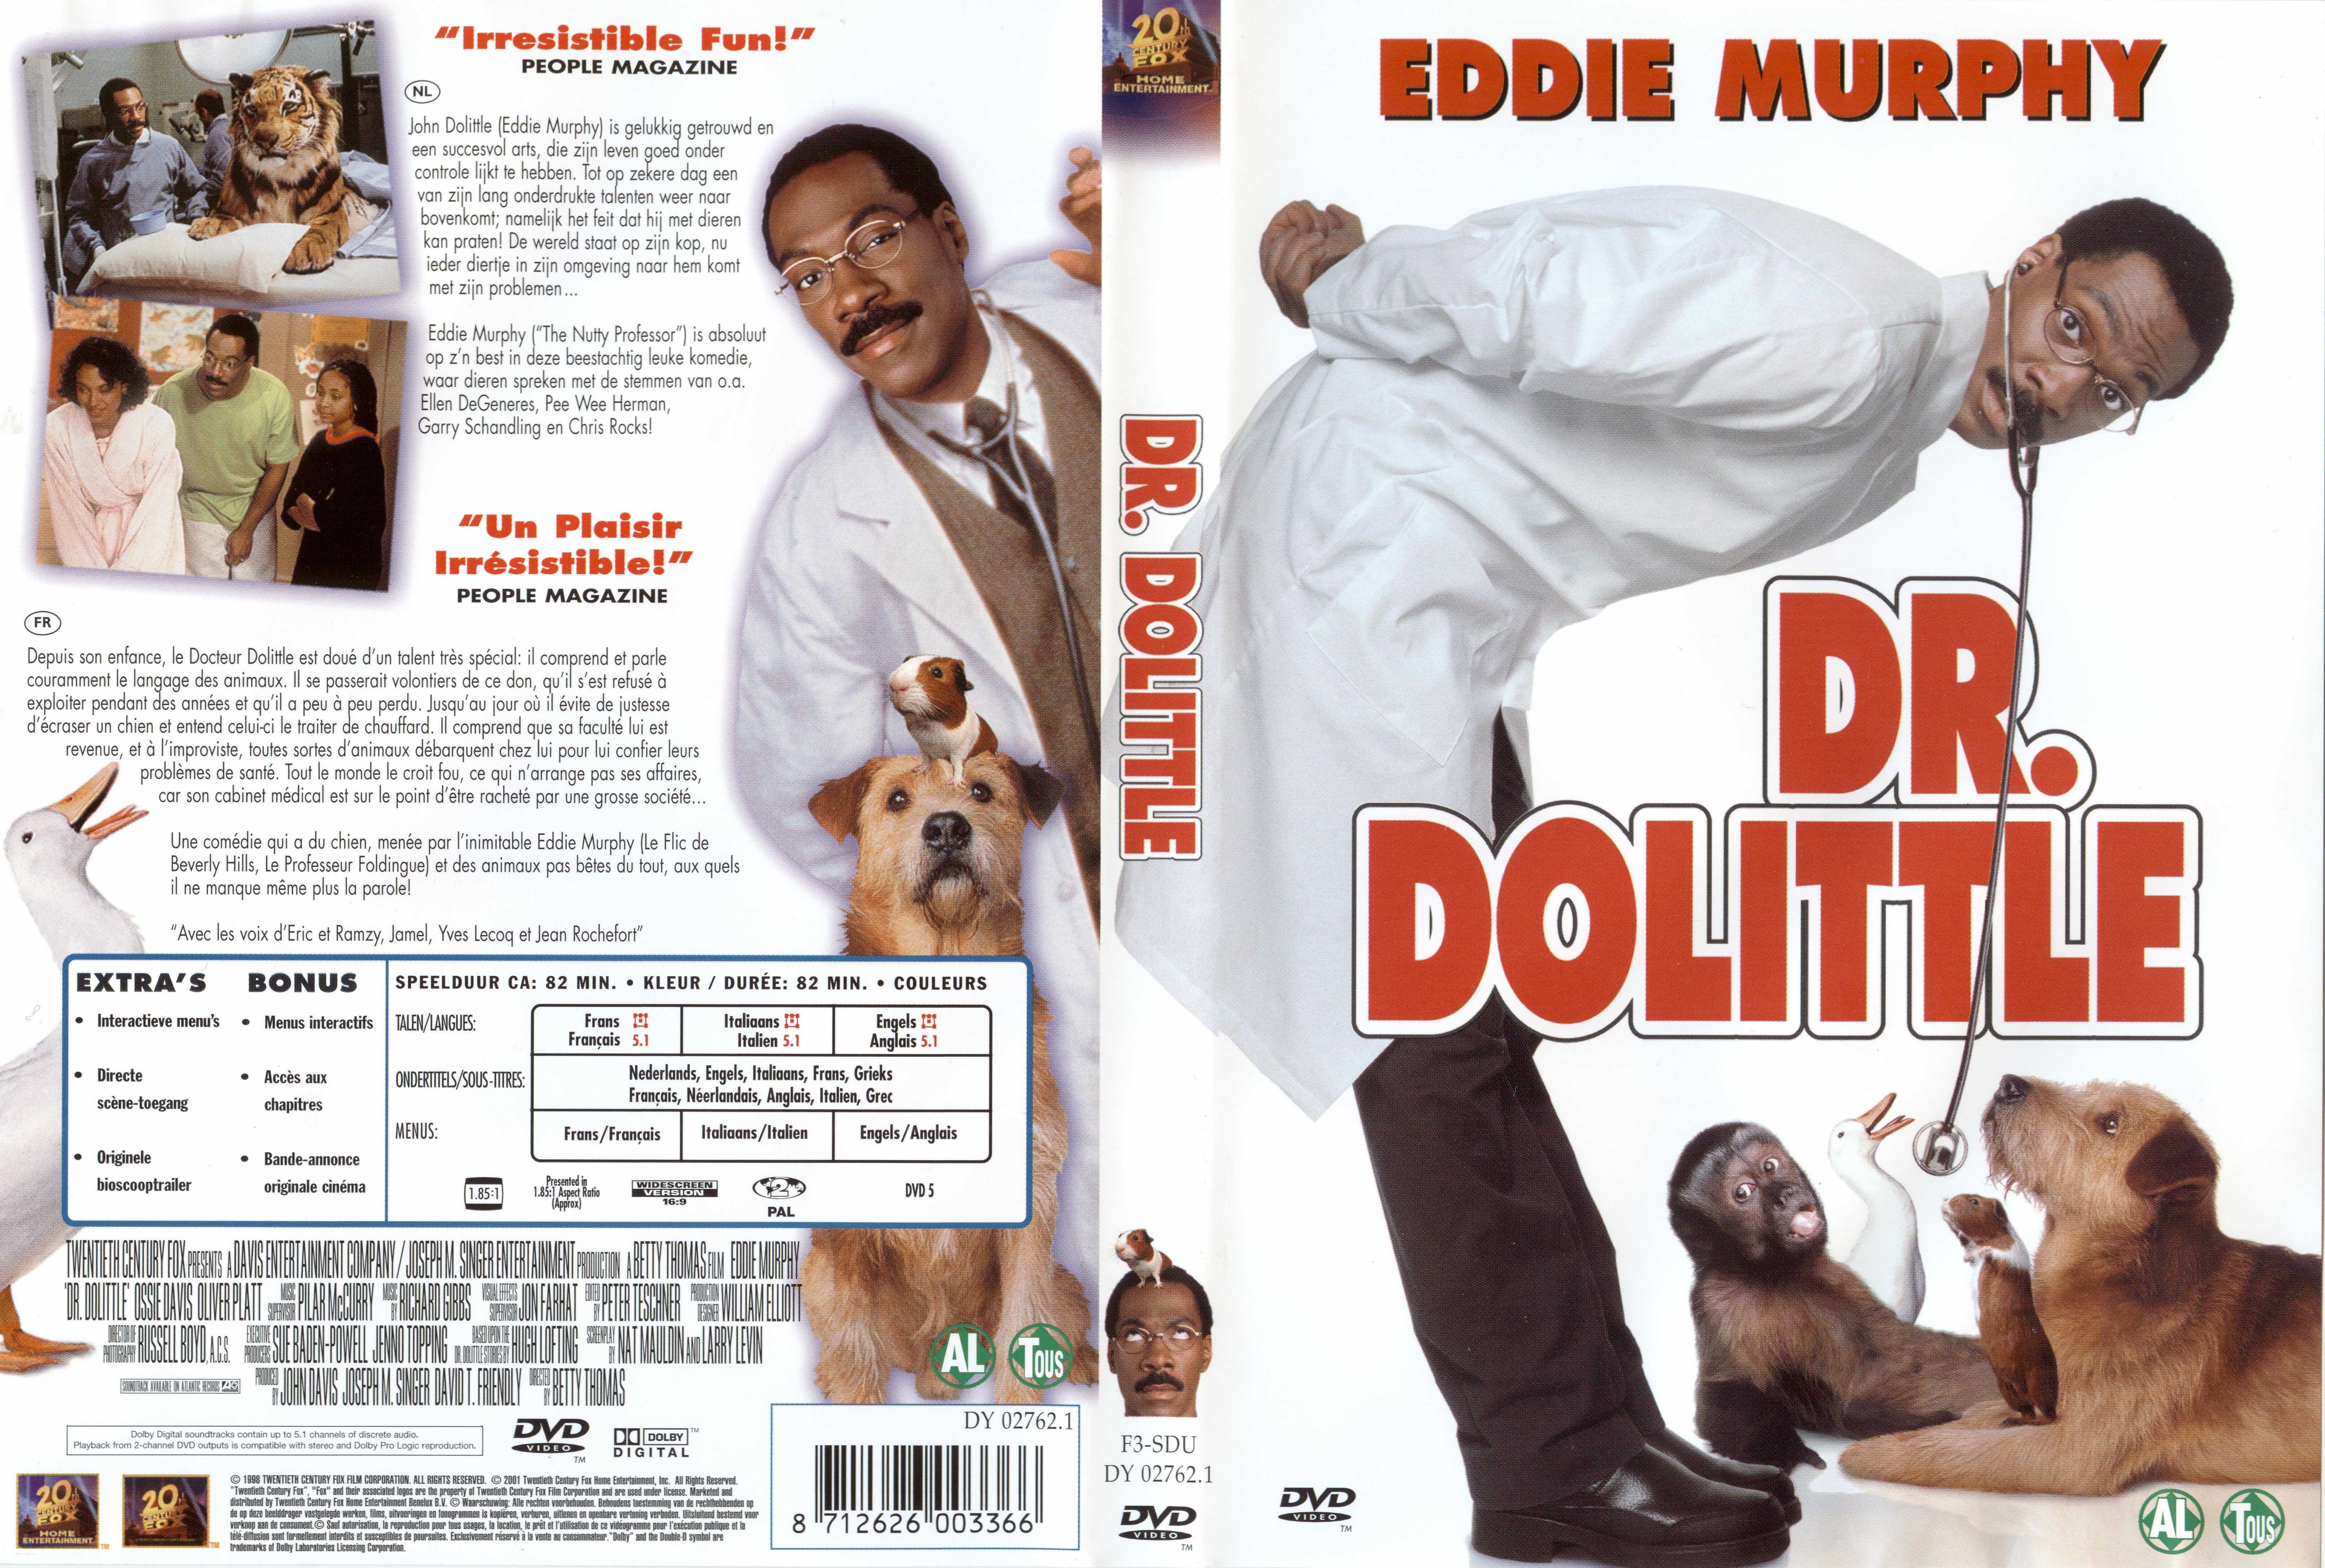 Jaquette DVD Docteur Dolittle v2